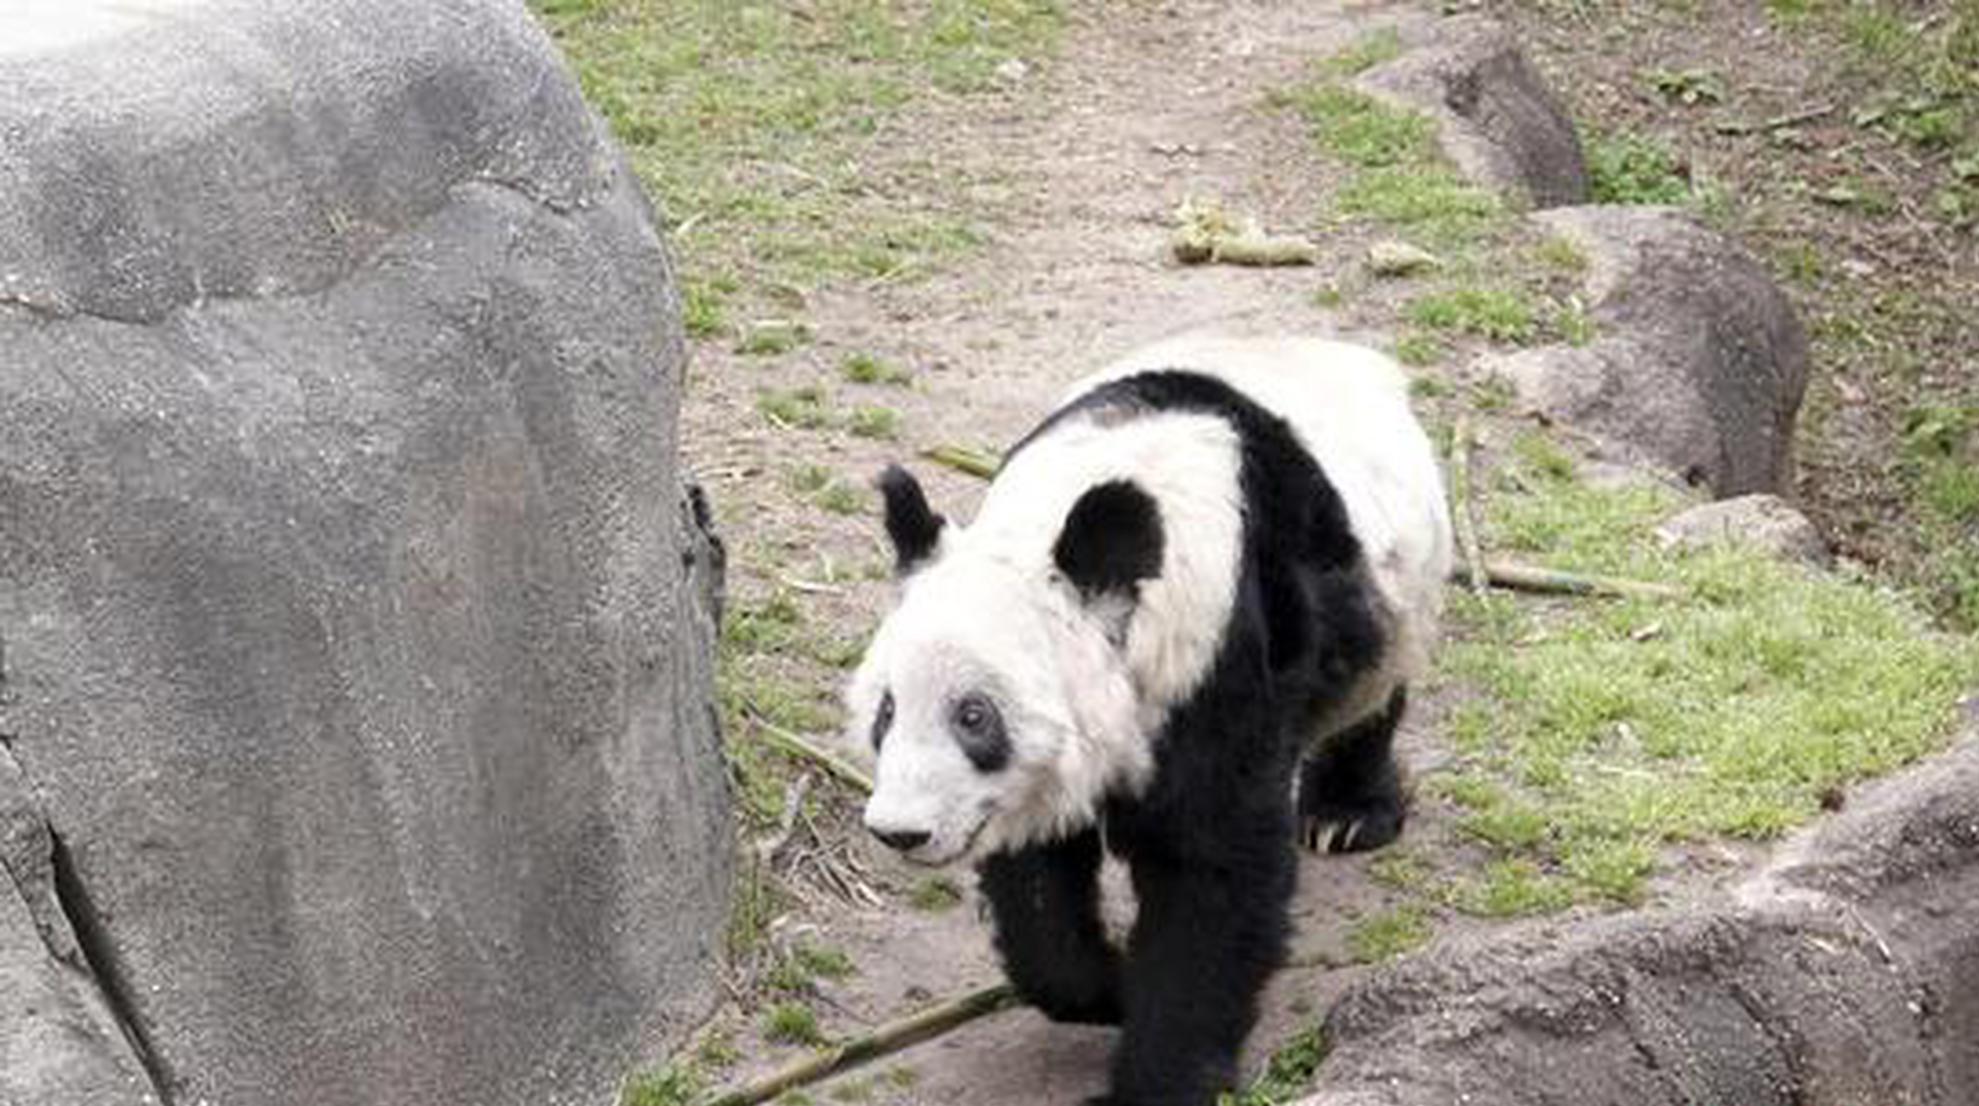 Giant panda Ya Ya arrives at Beijing Zoo